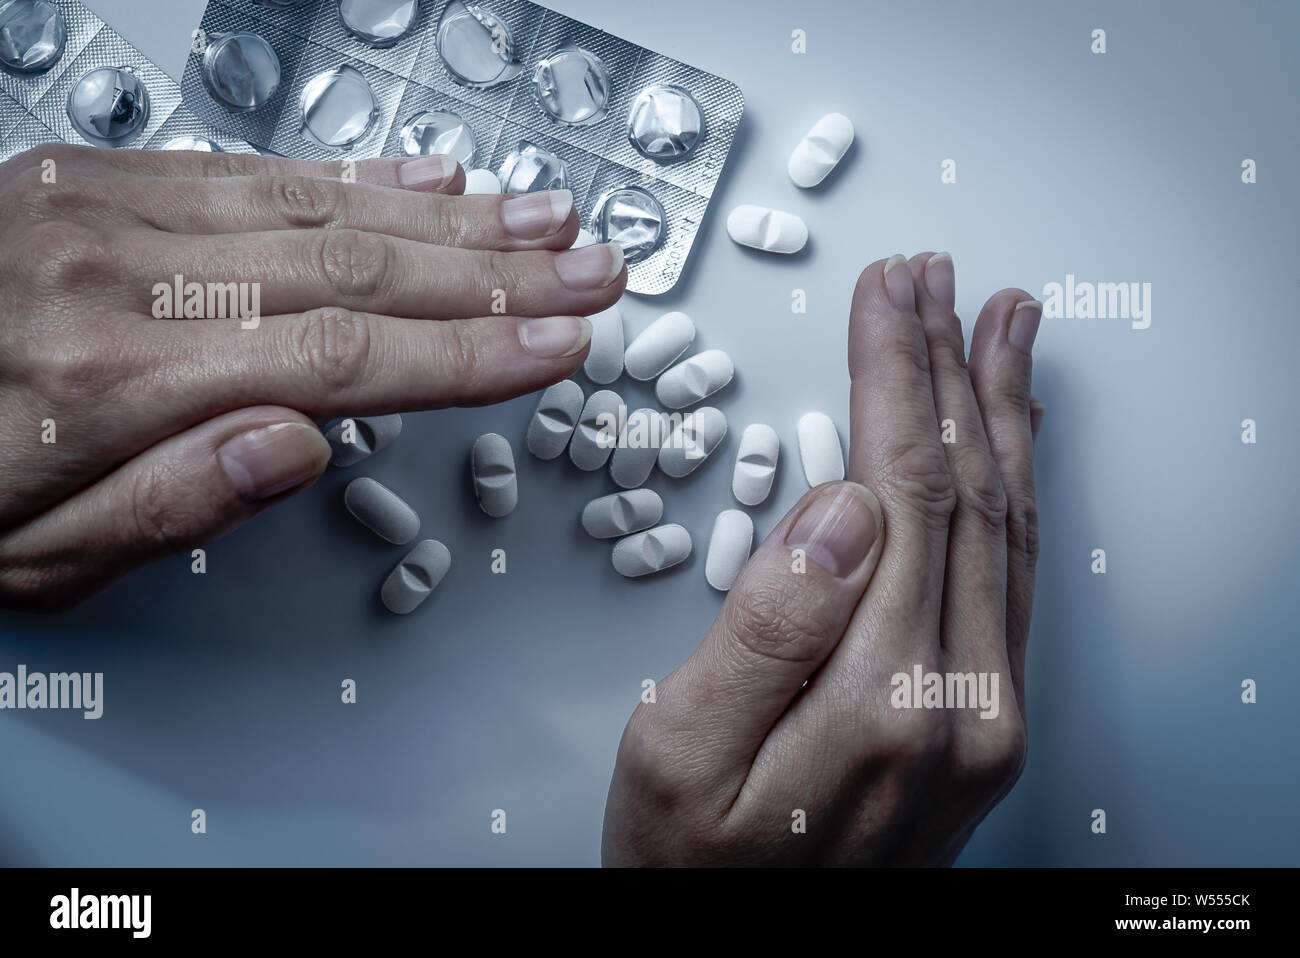 Hände Abdeckungen und versteckt viele weiße verschreibungspflichtige Medikamente, Medizin-Tabletten oder Vitamin Pillen in einem Stapel - Begriff des Gesundheitswesen, Opioide sucht, Scham Stockfoto